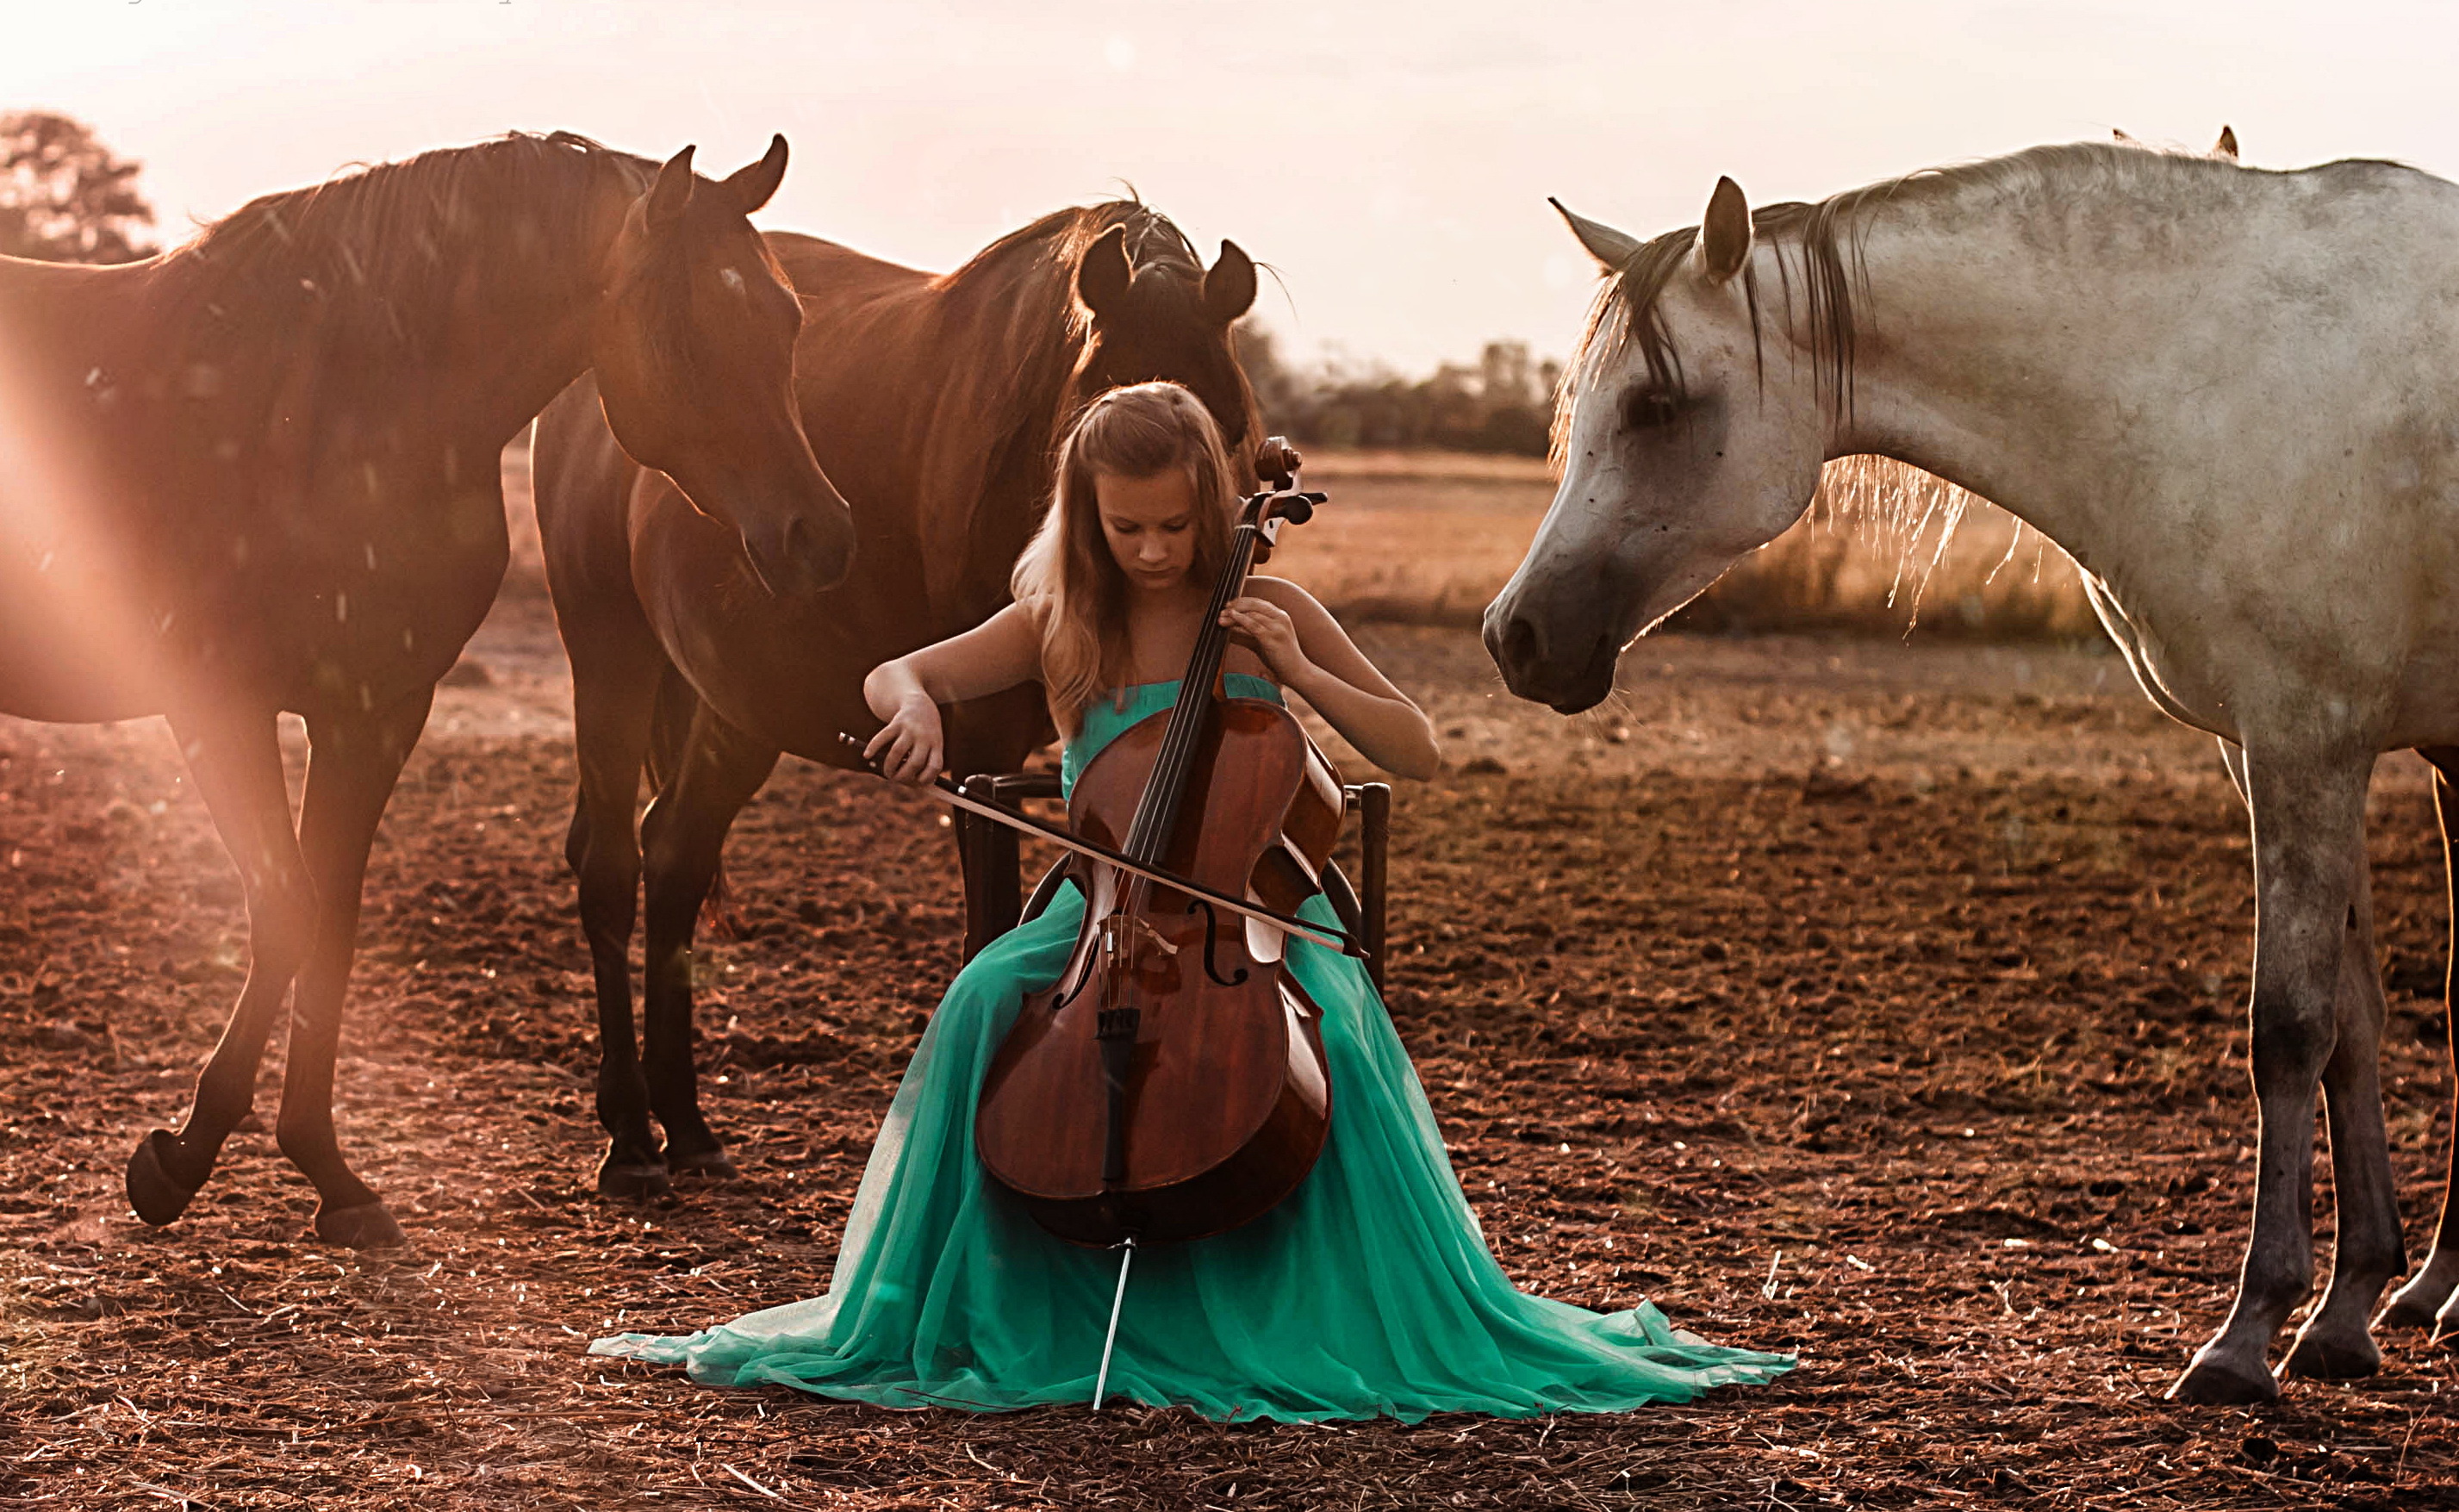 Horses song. Девушка с лошадью. Девушка на коне. Девочка на лошади. Красивая девушка на коне.